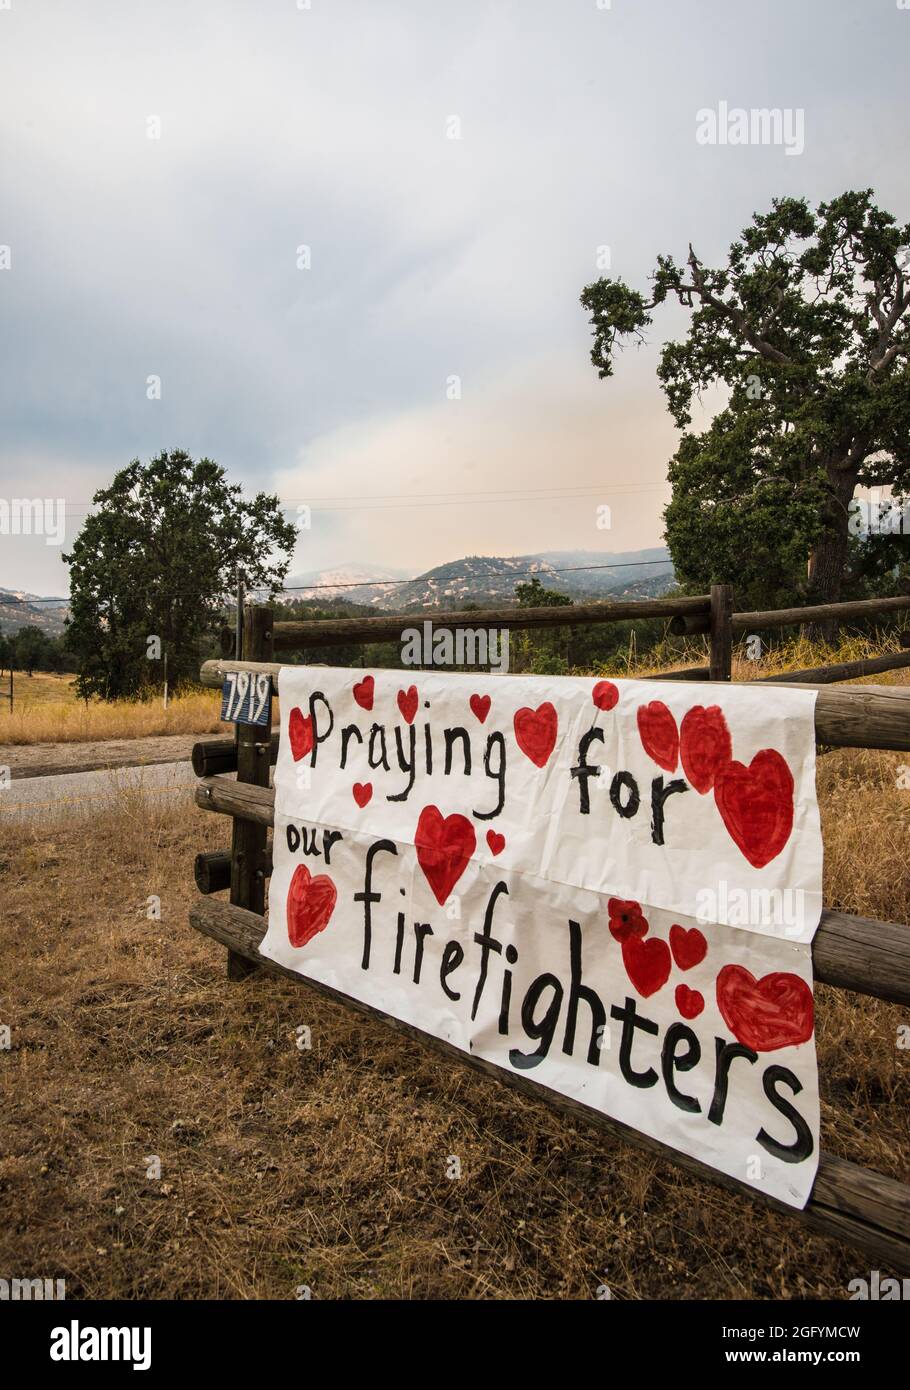 Feu de cèdre dans la forêt nationale de Sequoia près de Kernville, CA, le 22 août 2016. Photo USDA par lance Cheung. Pour plus d'informations, voir: www.usda.gov www.fs.fed.us @usda @Forestservice Video le coeur d'un pompier https://youtu.be/QxJFIfkOQLY Banque D'Images